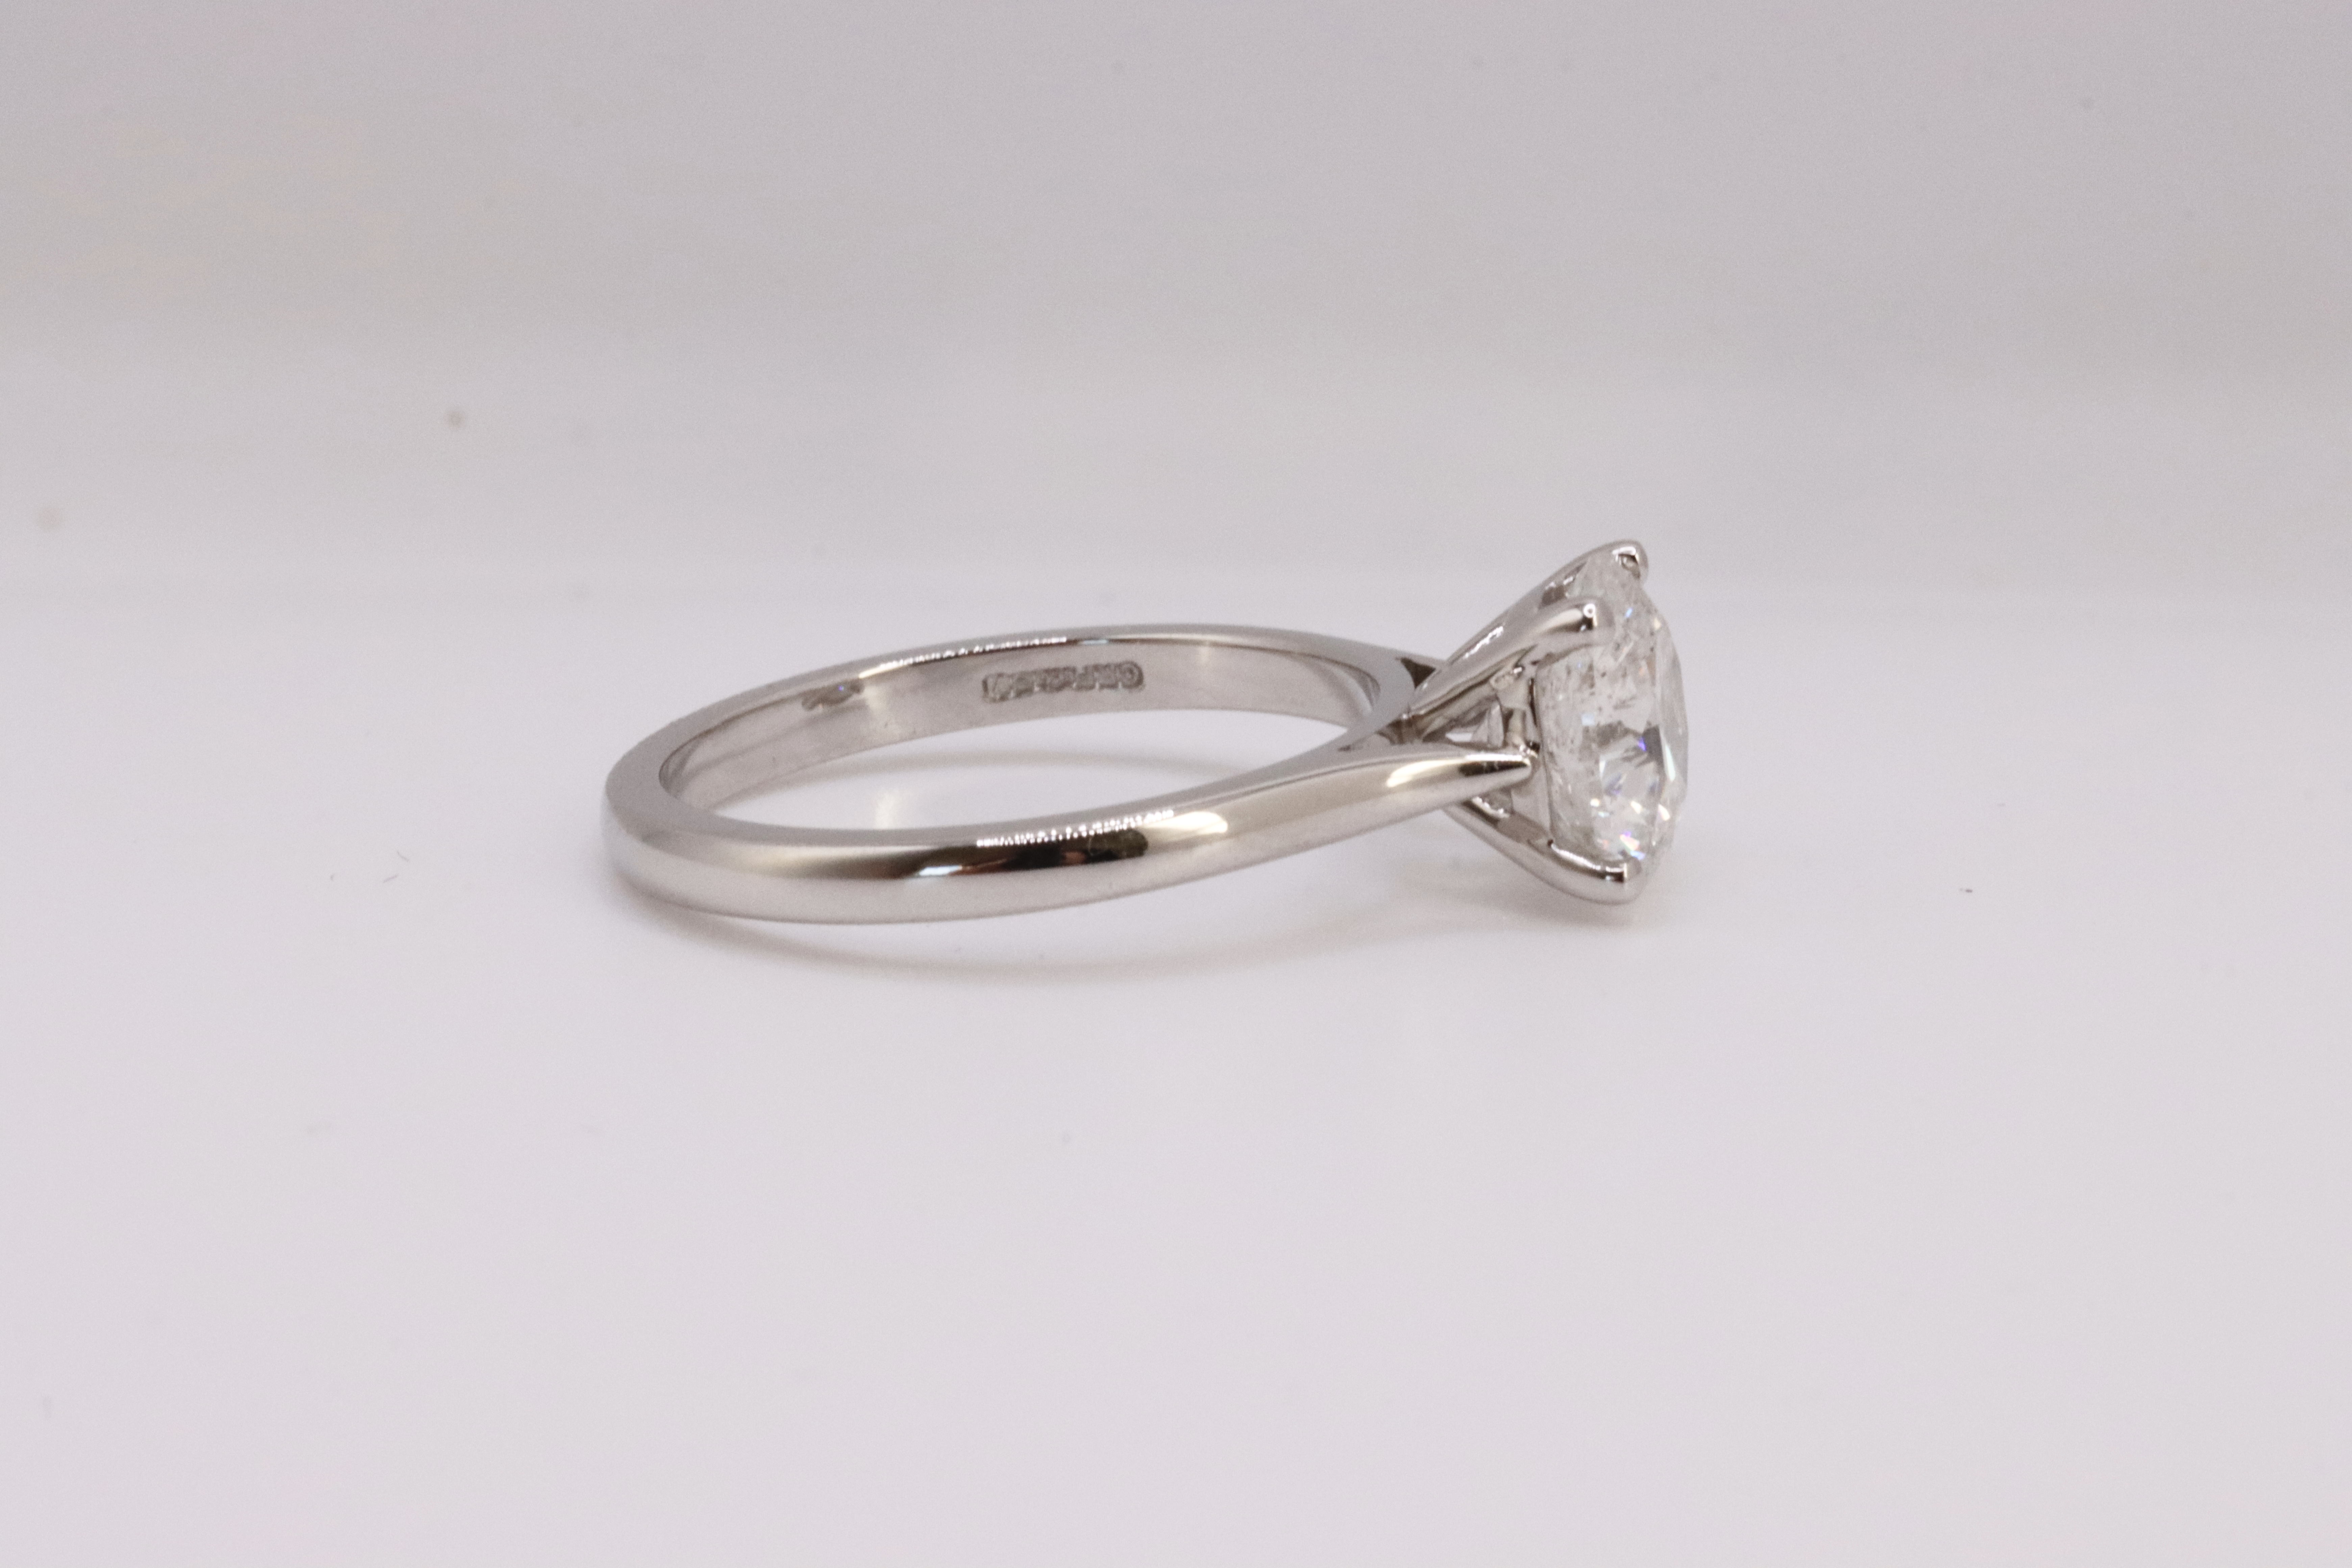 ** ON SALE ** Round Brilliant Cut Natural Diamond 2.00 Carat Colour D Clarity VS2 Platinum Ring- DGI - Image 4 of 8